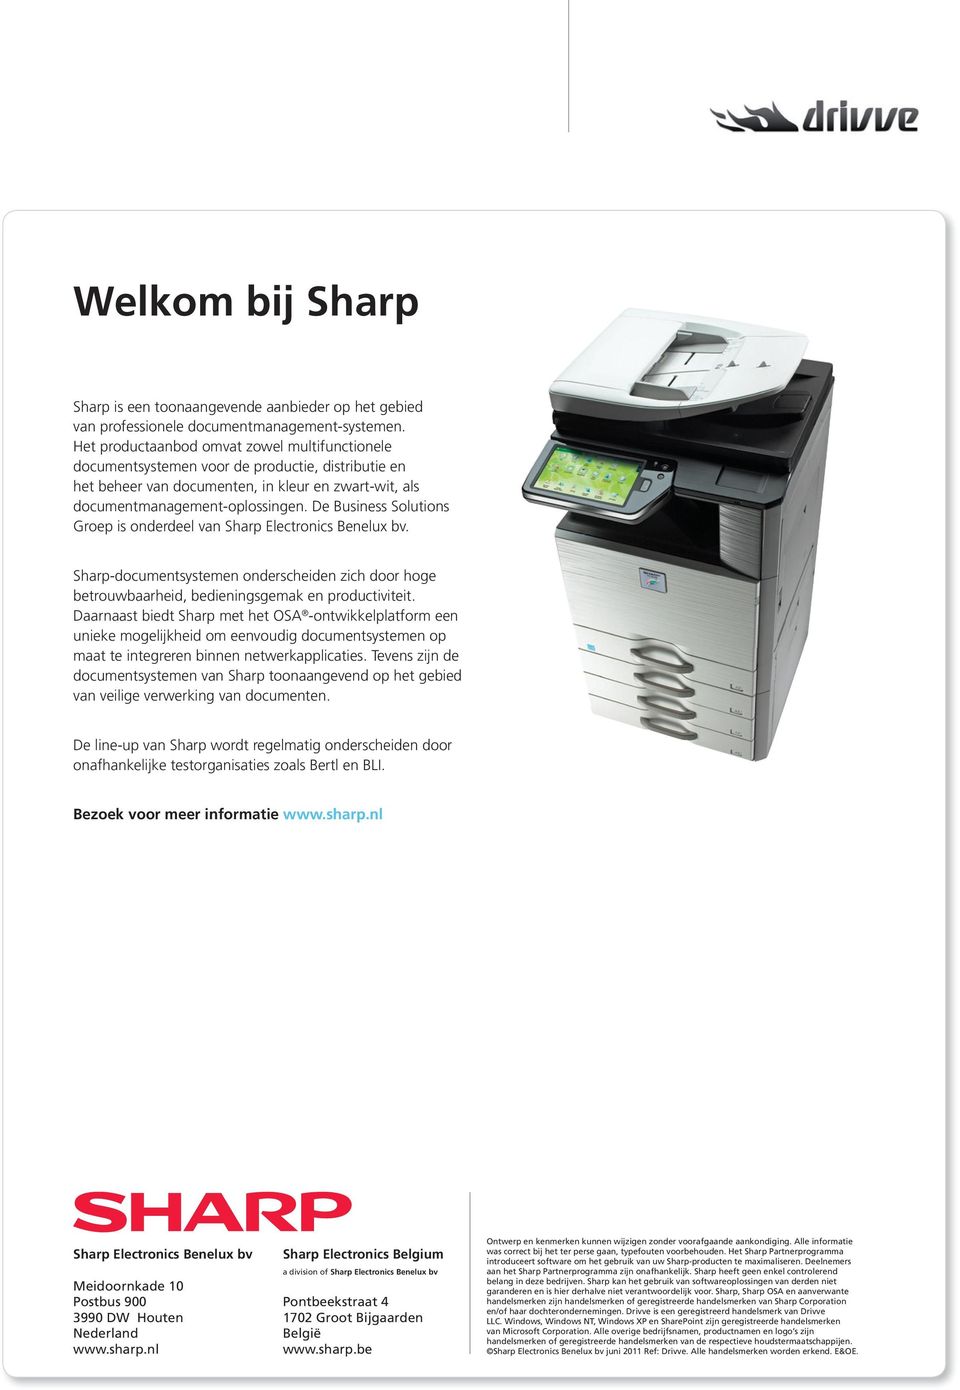 De Business Solutions Groep is onderdeel van Sharp Electronics Benelux bv. Sharp-documentsystemen onderscheiden zich door hoge betrouwbaarheid, bedieningsgemak en productiviteit.